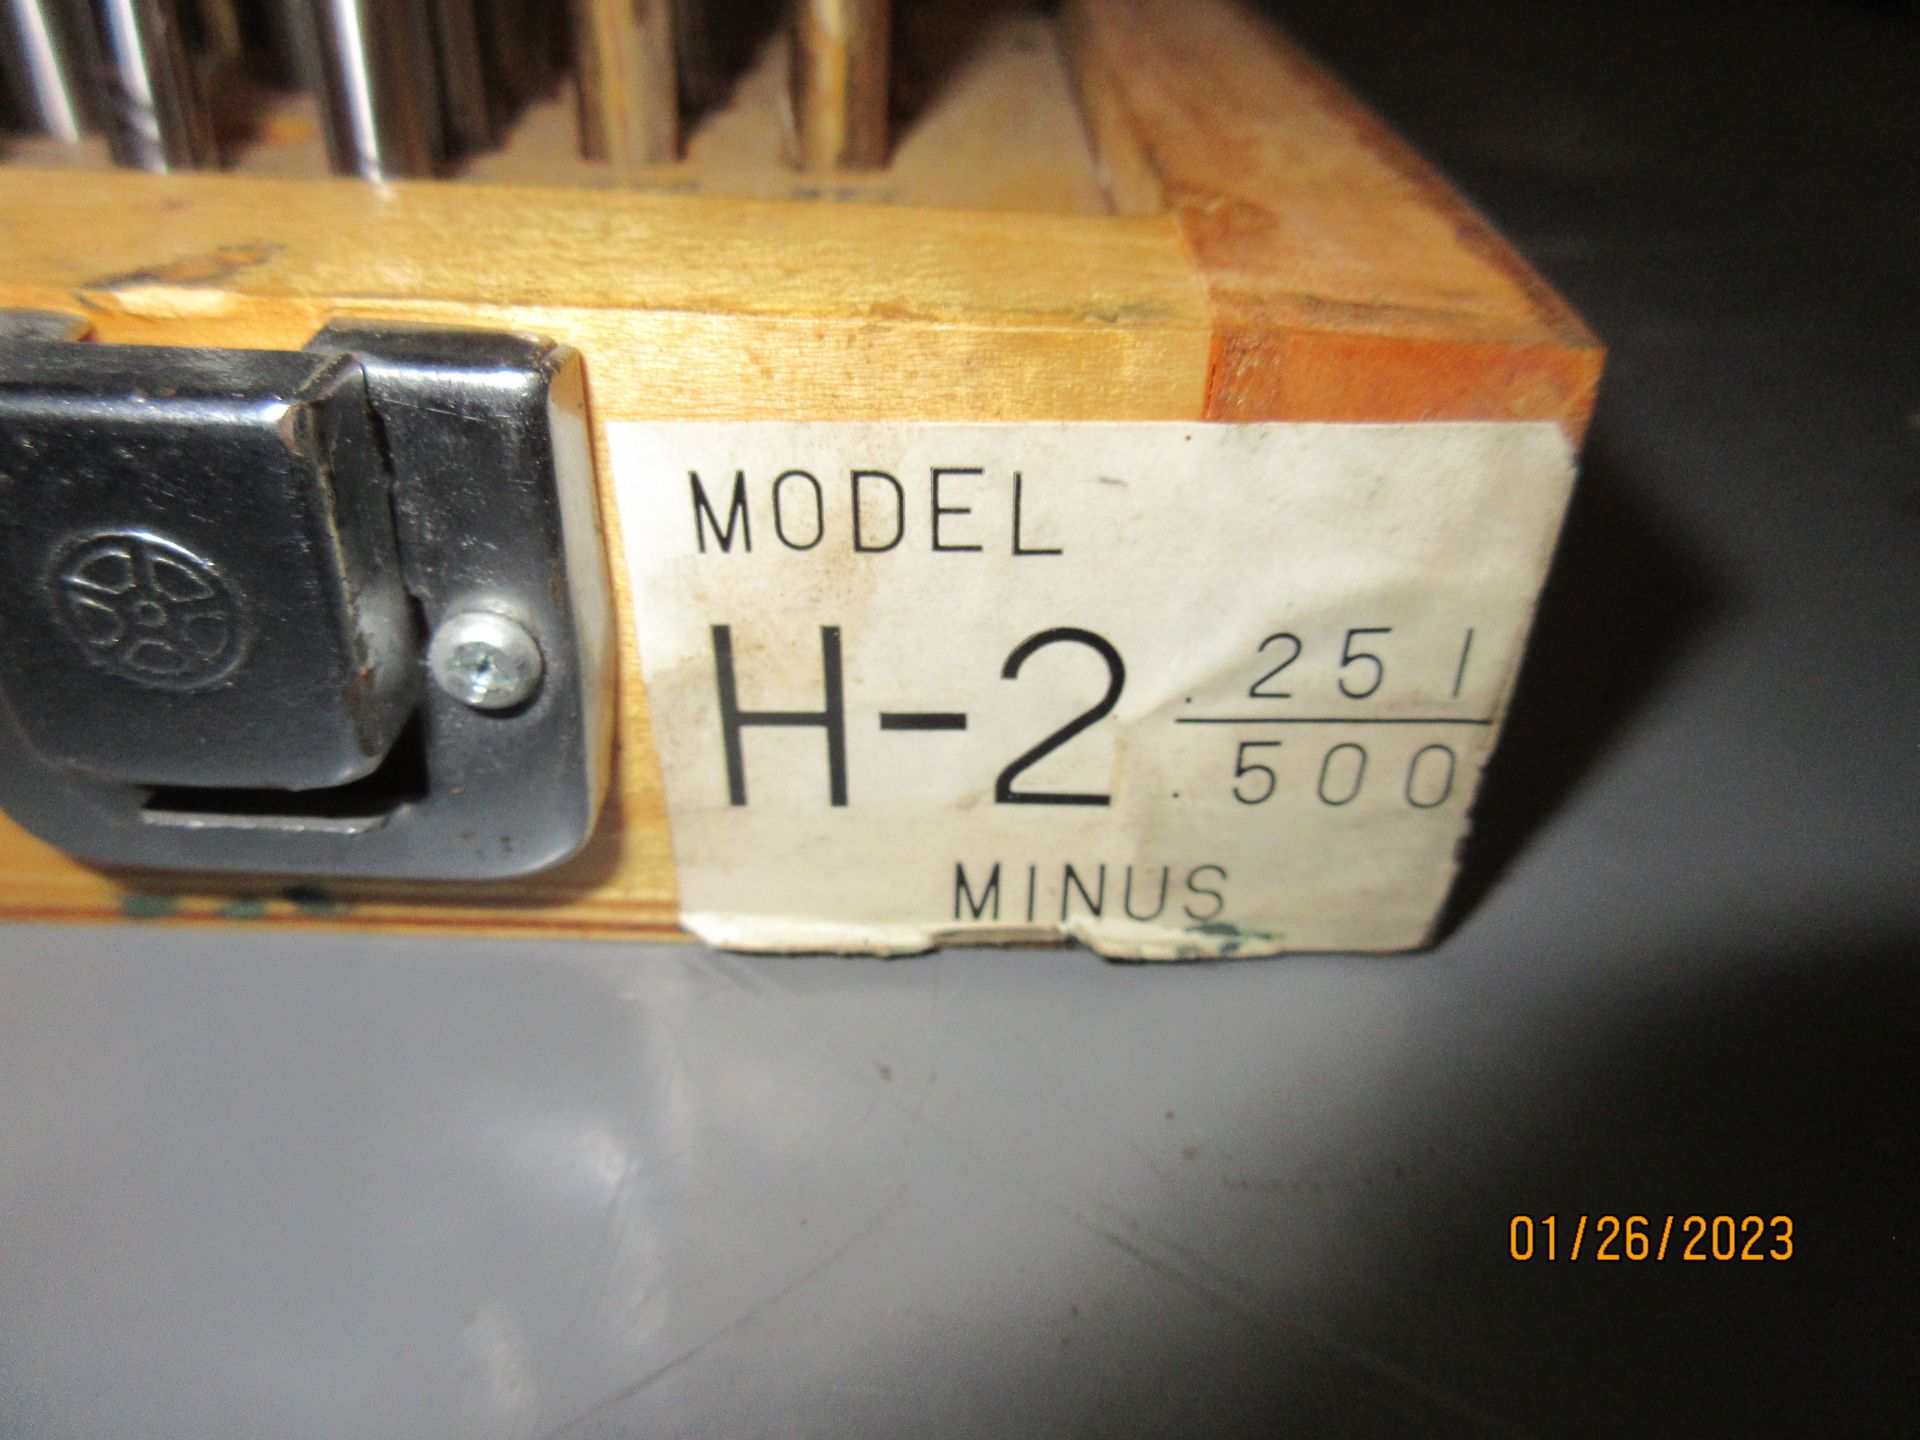 HDT MINUS PIN GAGE SET H-2 .251/.500 - Image 2 of 3